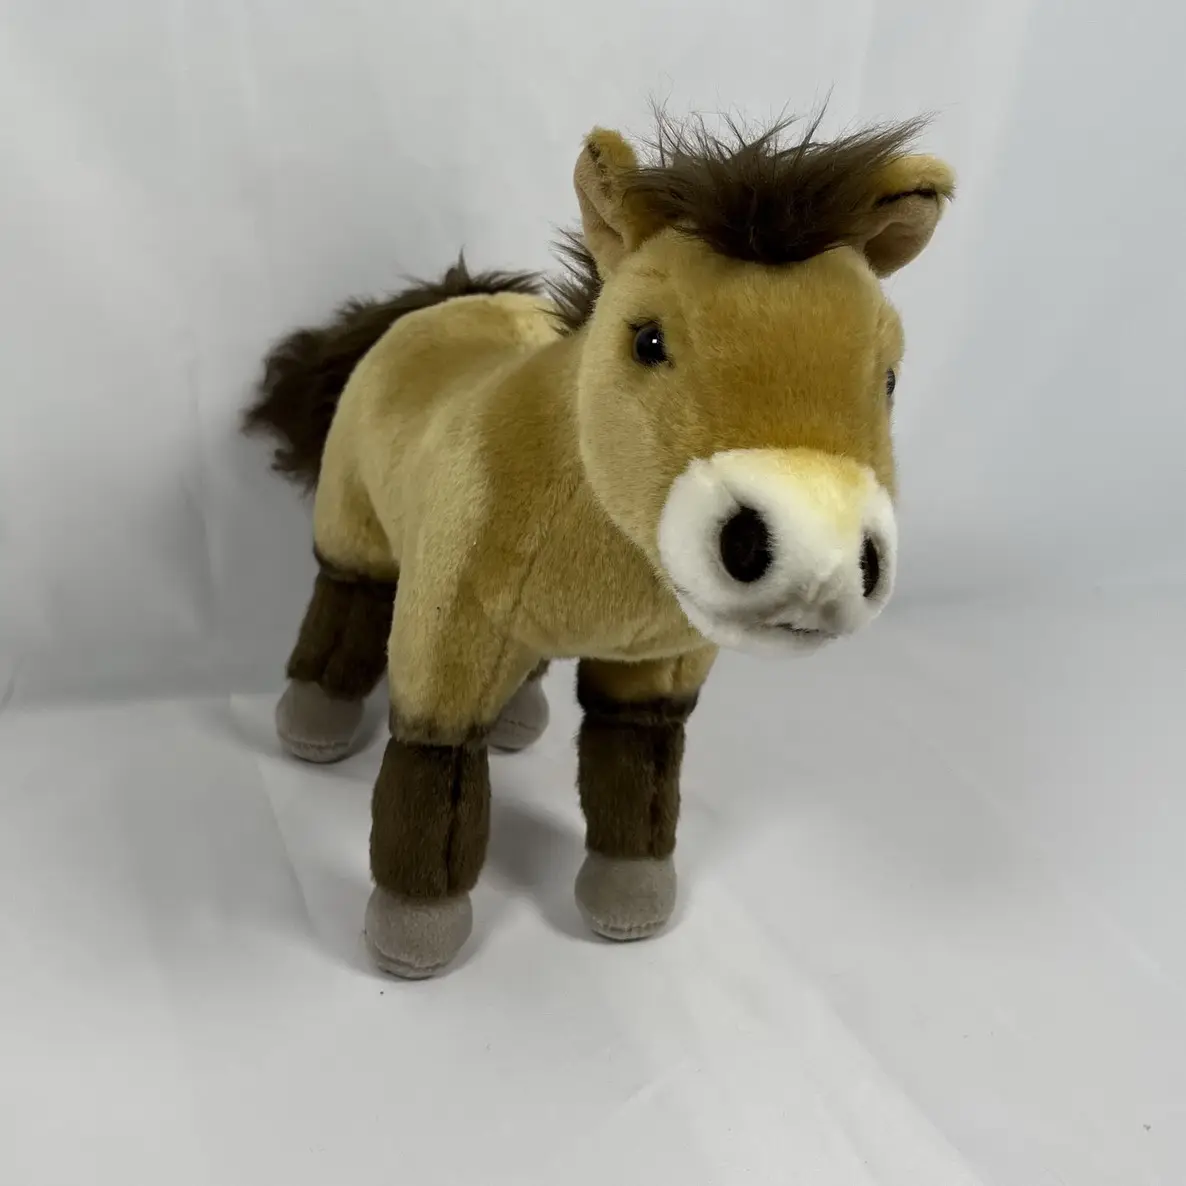 FAMA OEKO Audit Plush Animal Plush Toy Horse